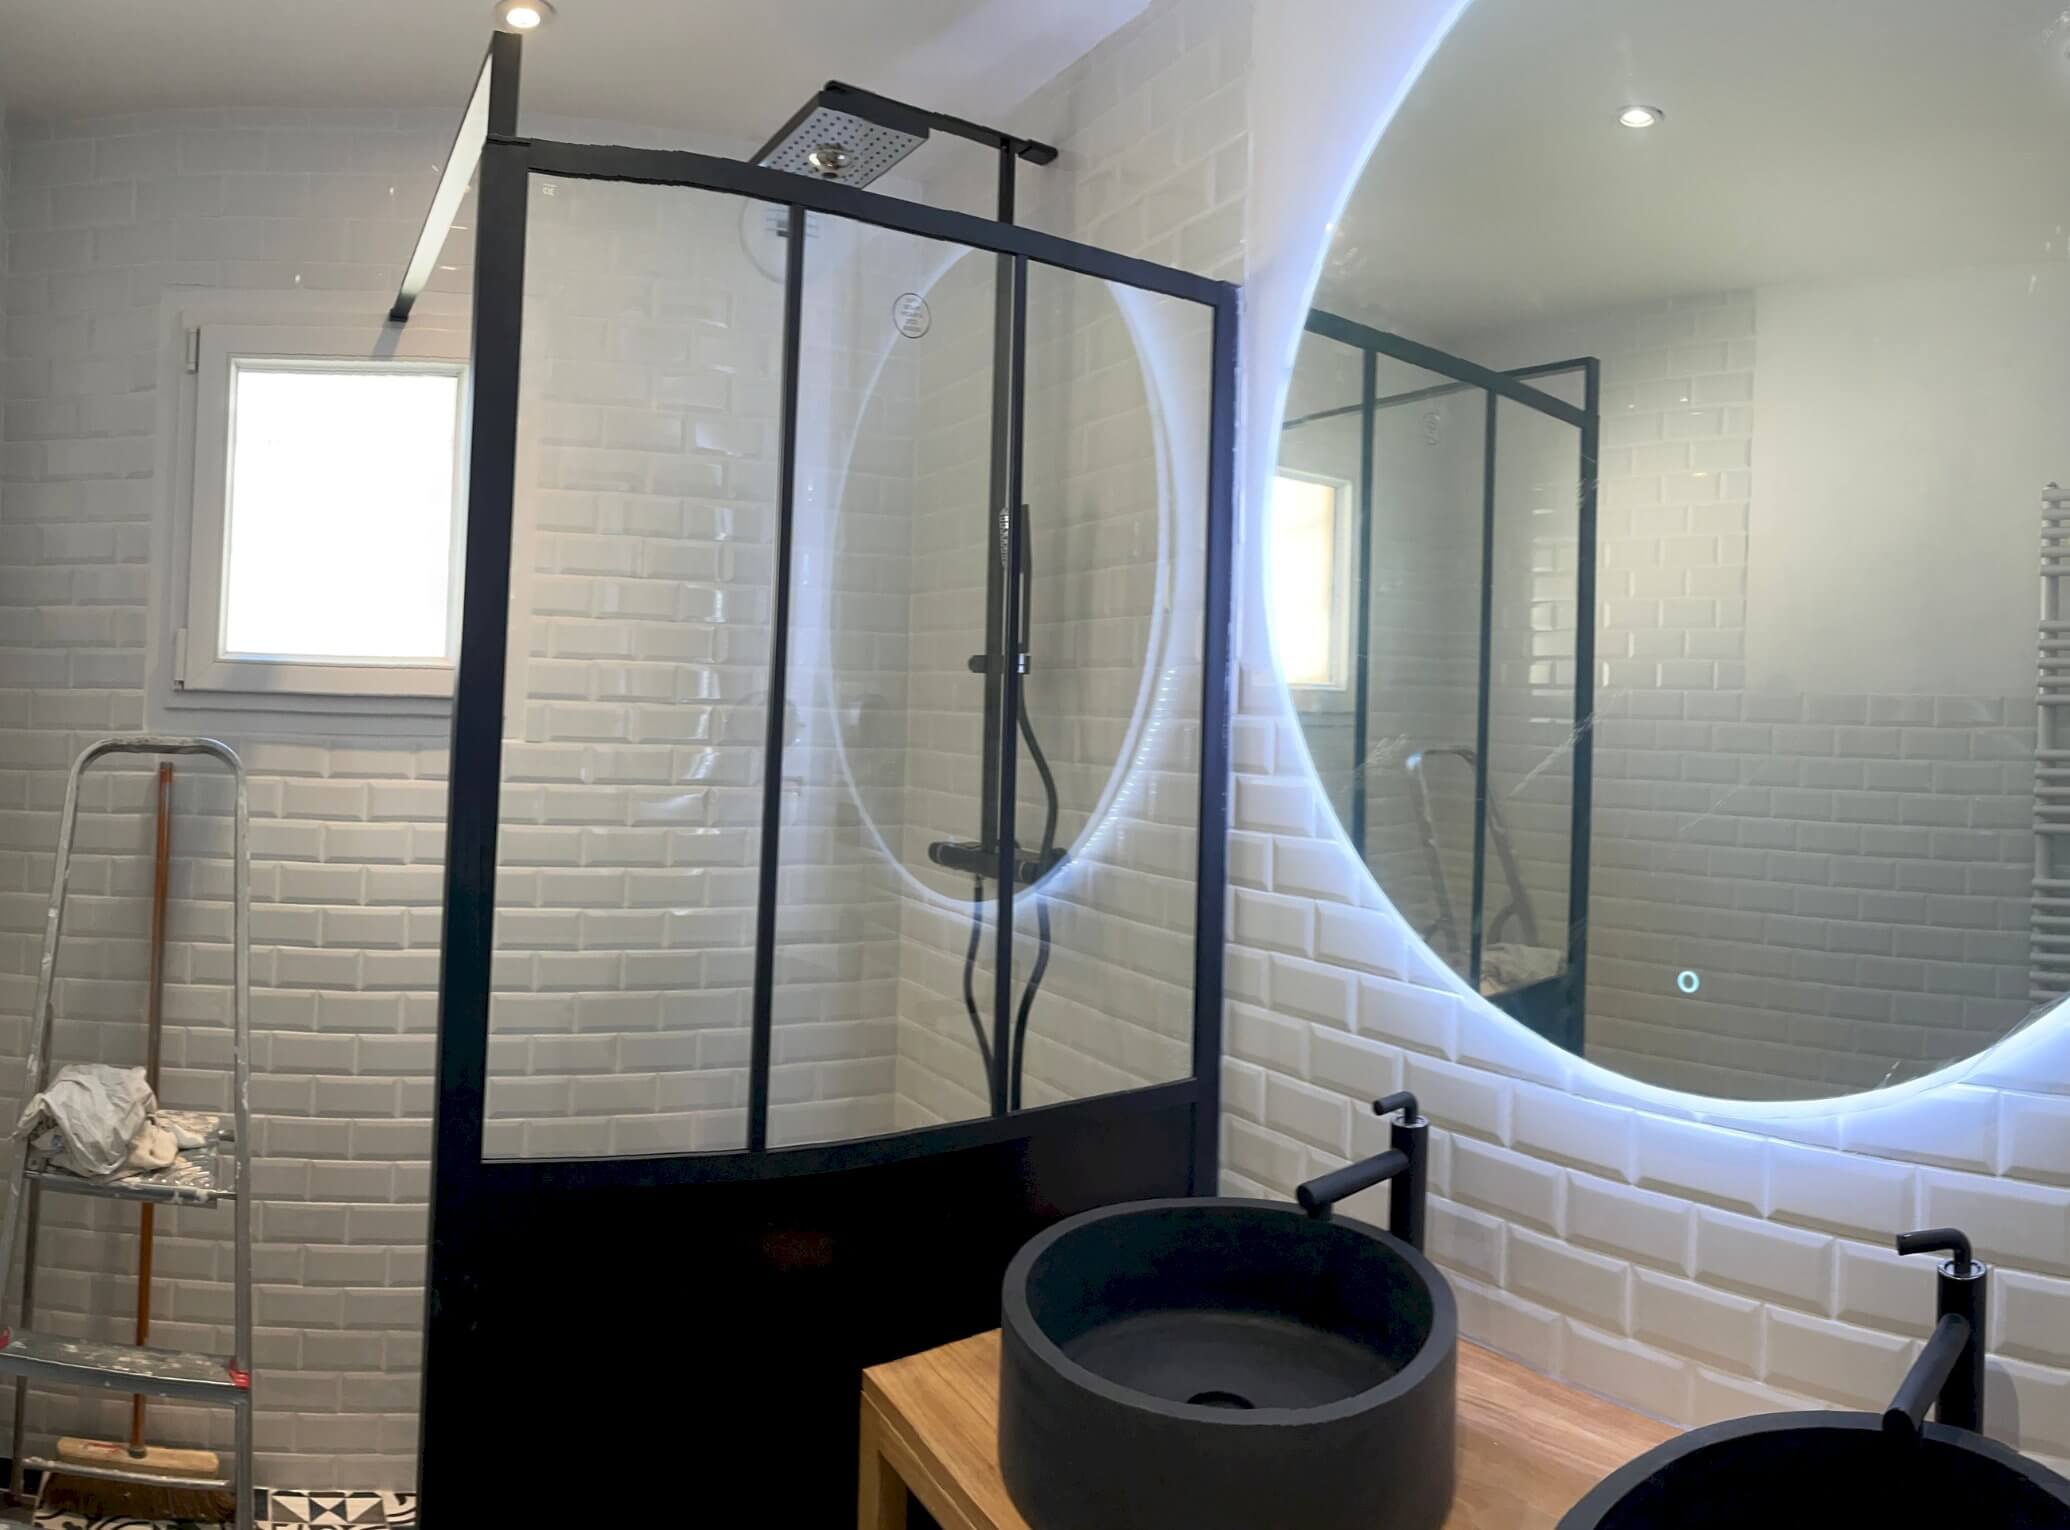 Rénovation complète de salle de bains à Dammartin-en-Serve (78) - Avenir Rénovations